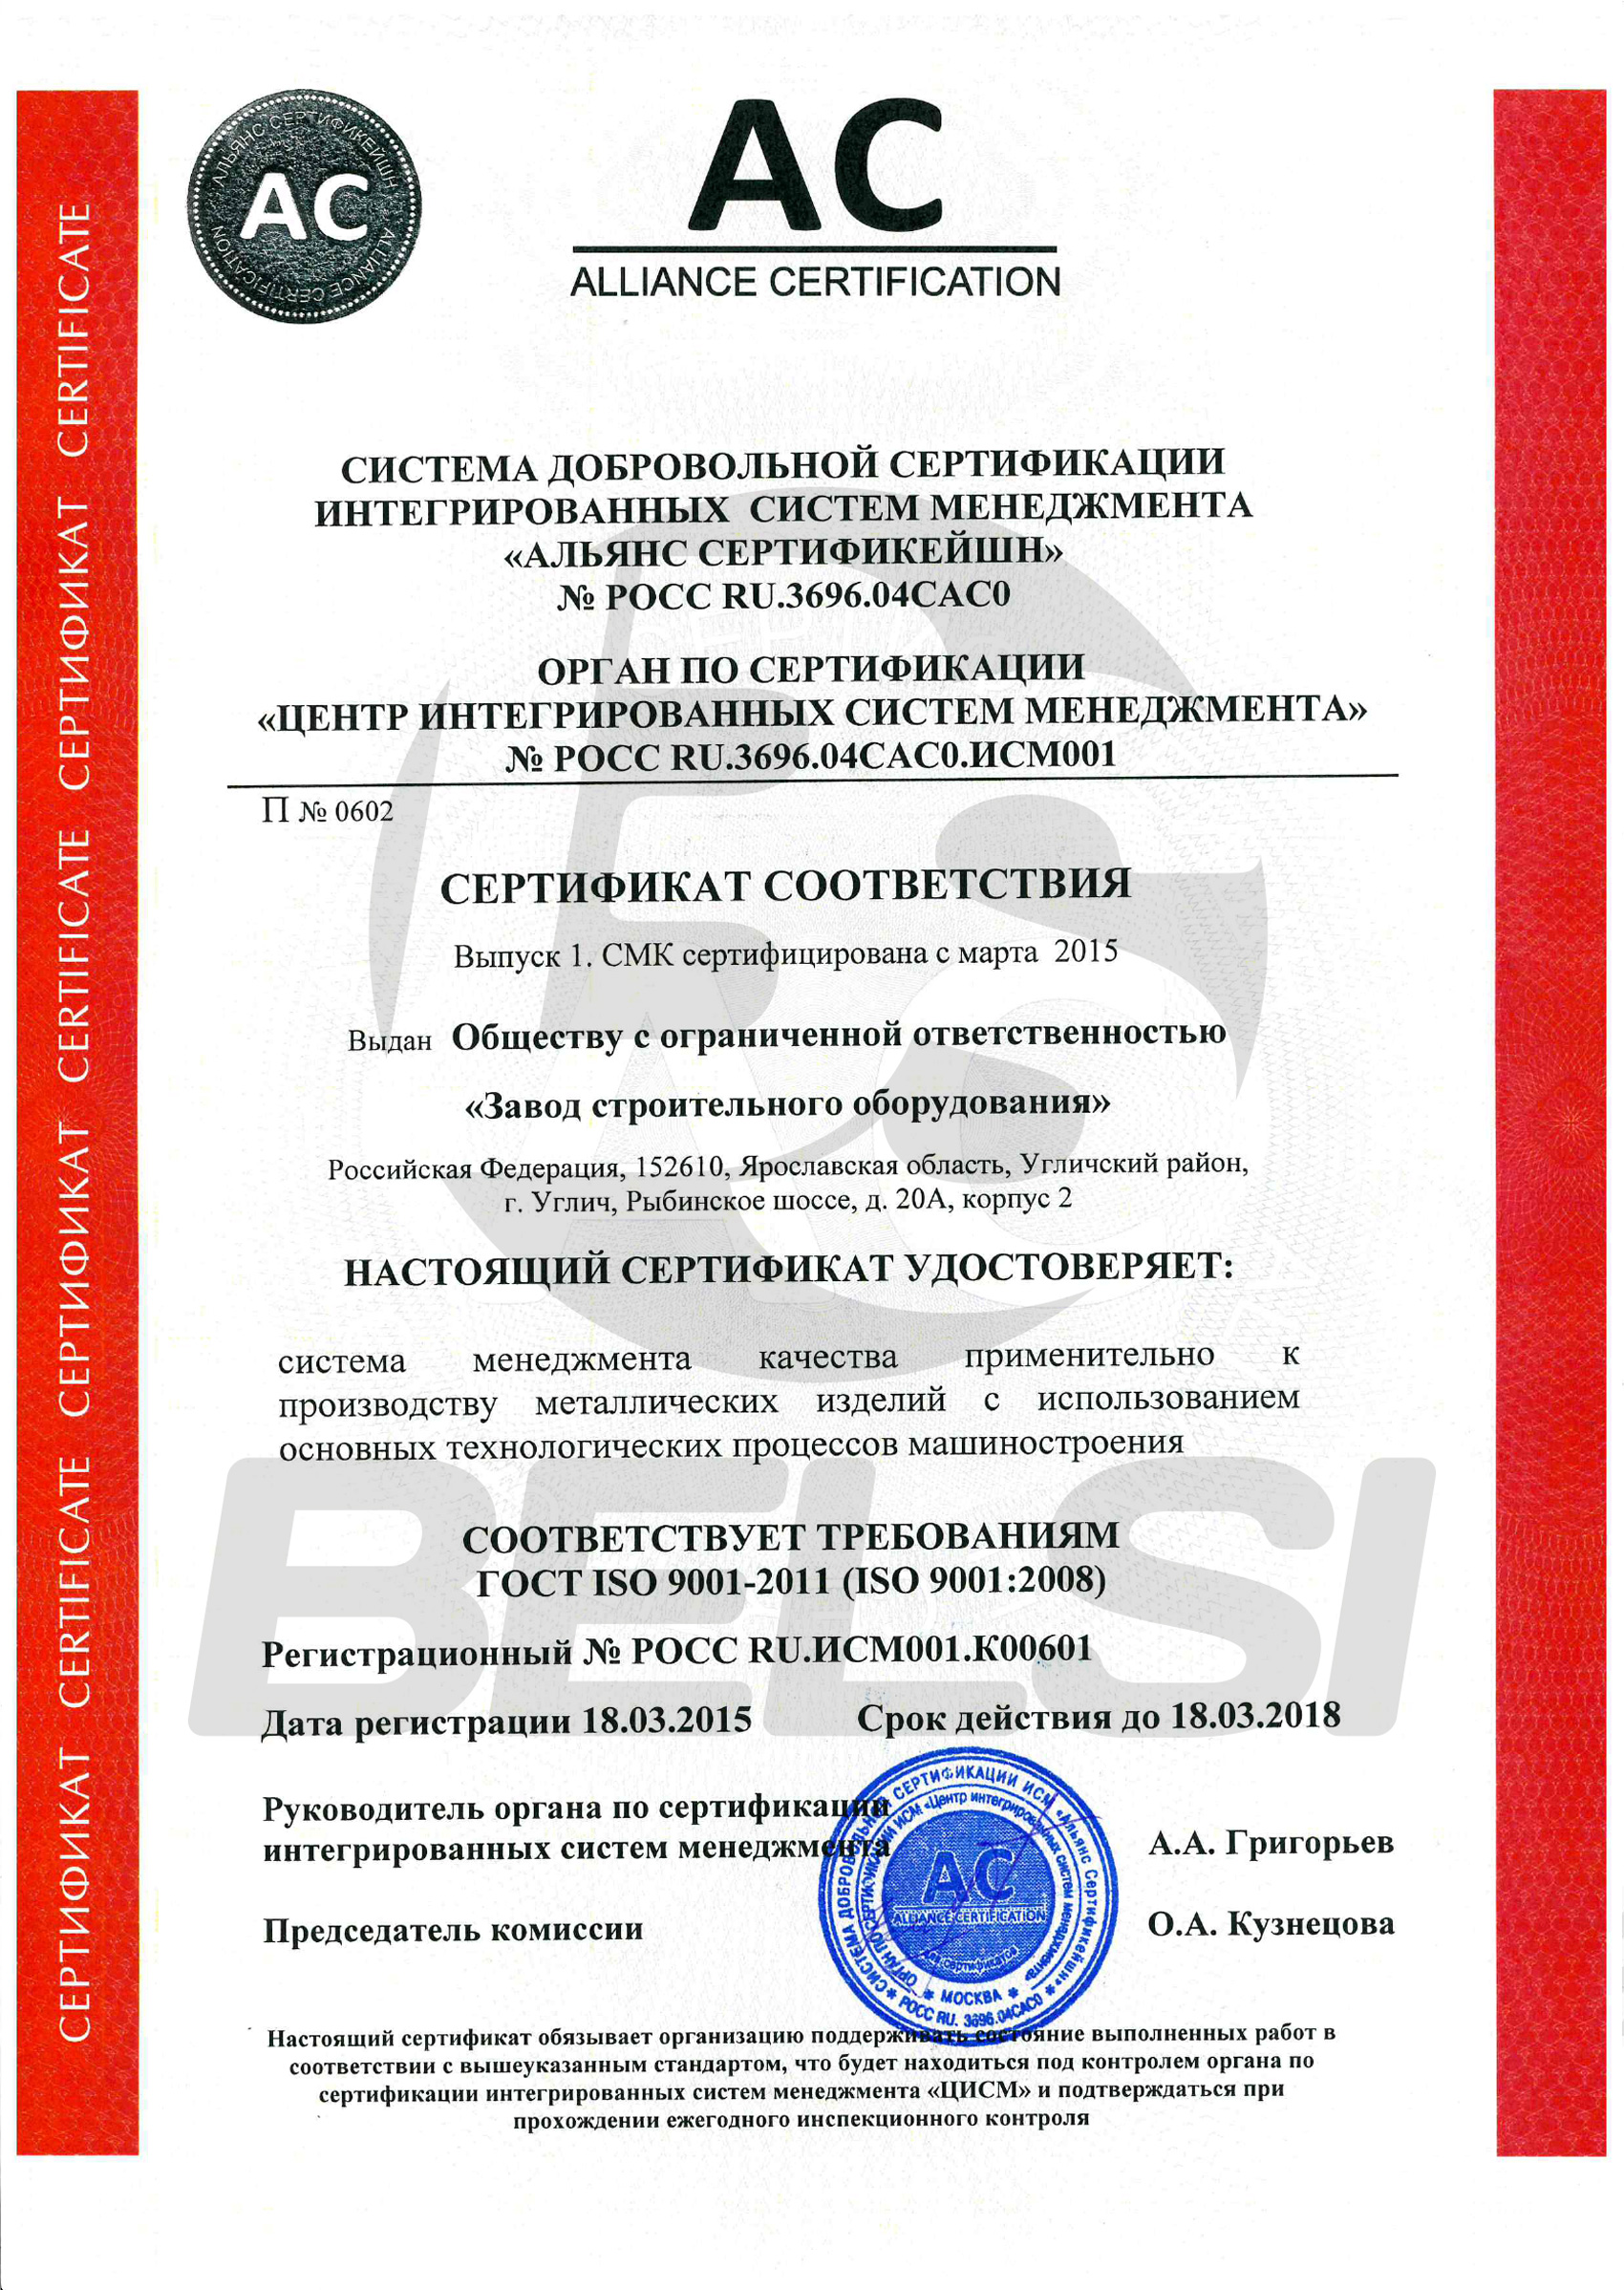 Сертификат соответствия системы менеджмента по ГОСТ ISO 9001-20011